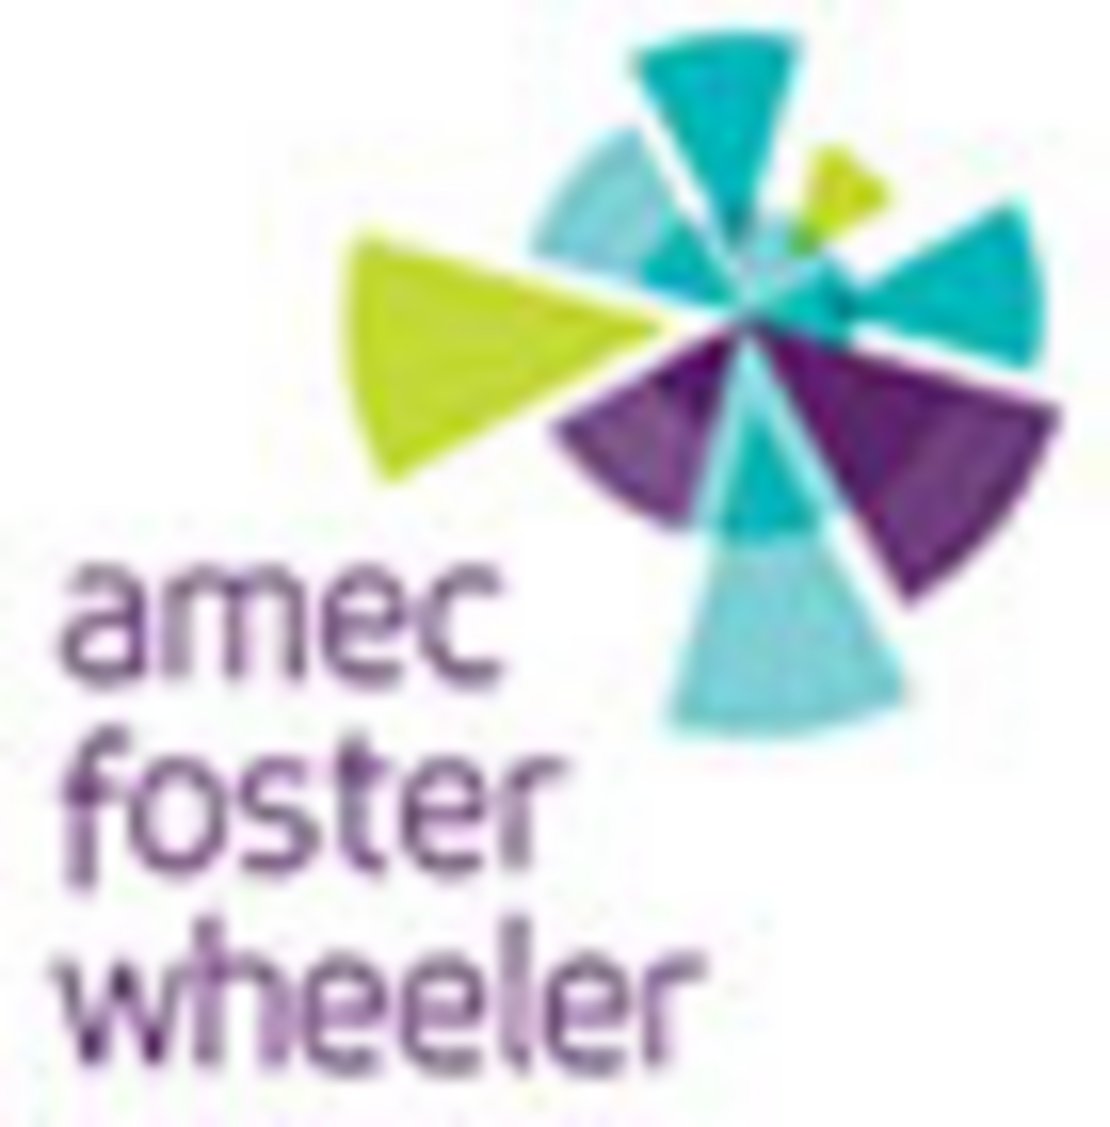 amec_foster_wheeler